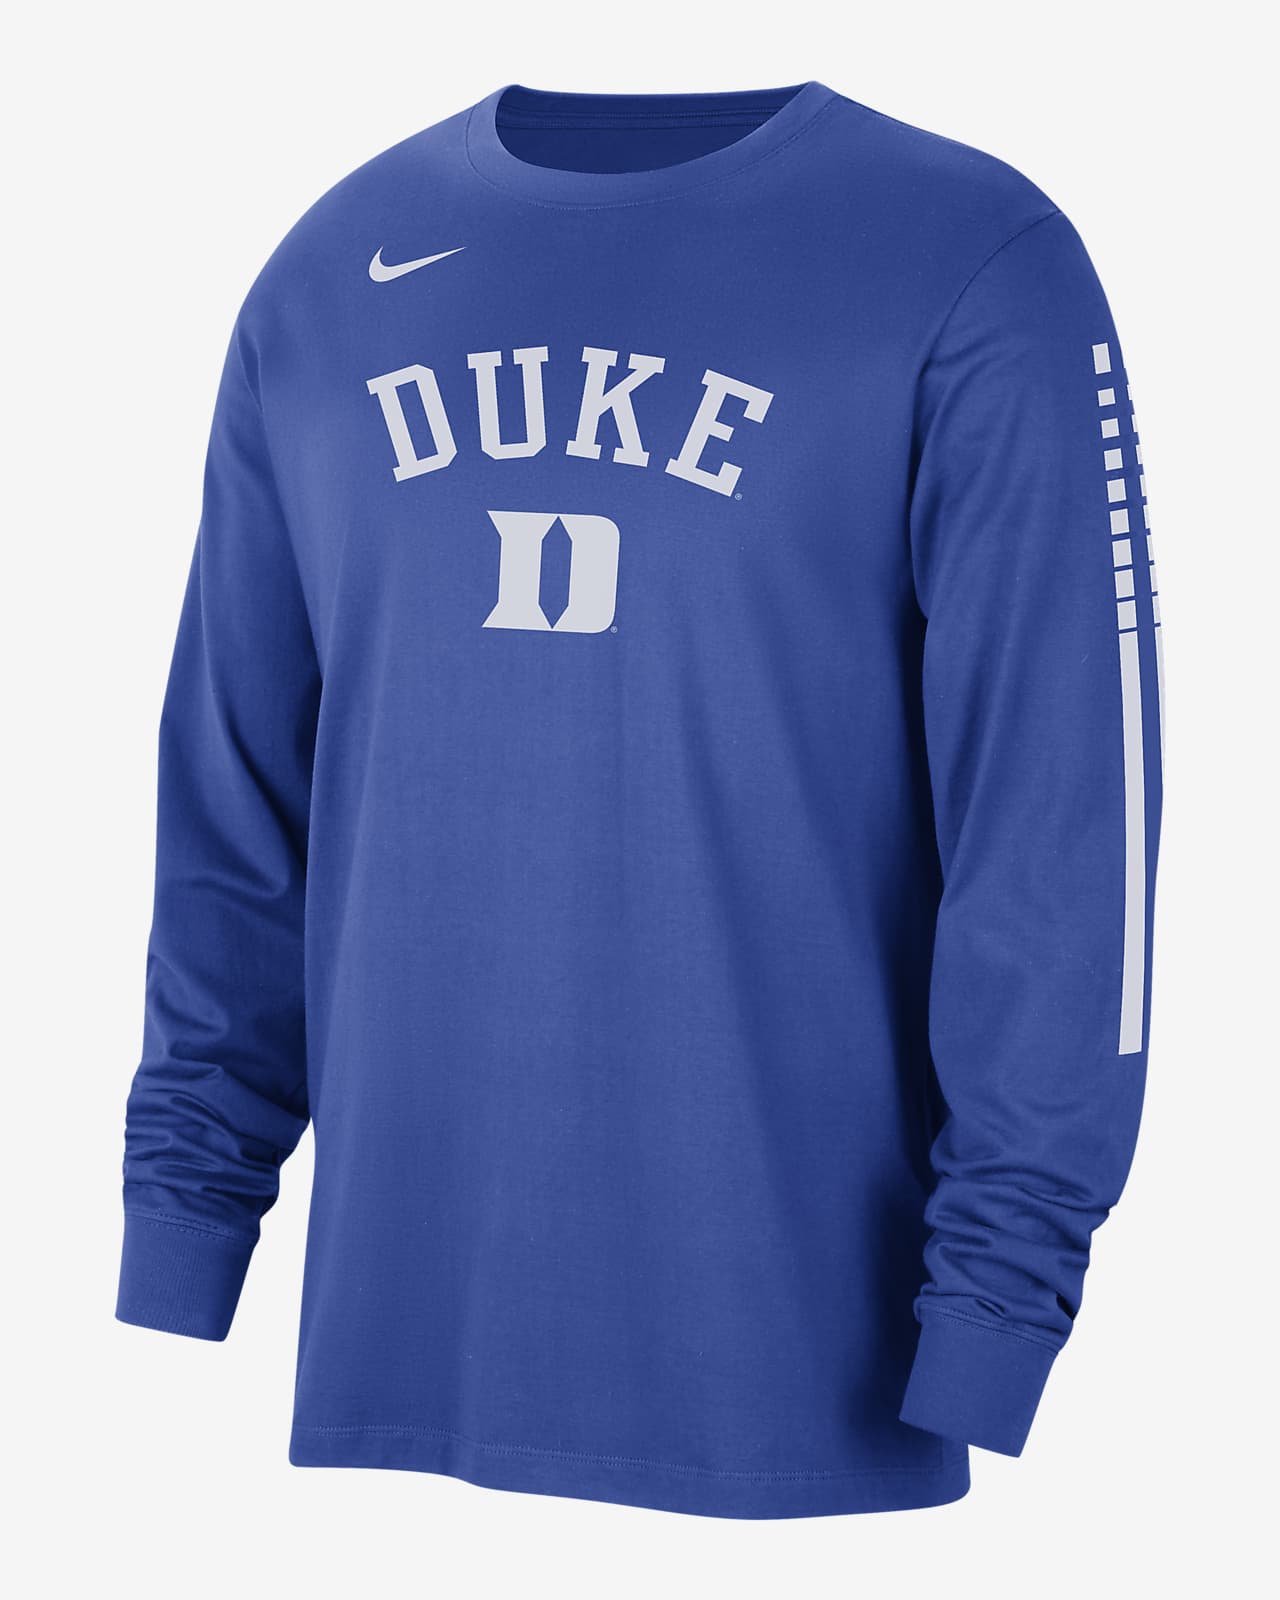 Duke Men's Nike College Long-Sleeve T-Shirt